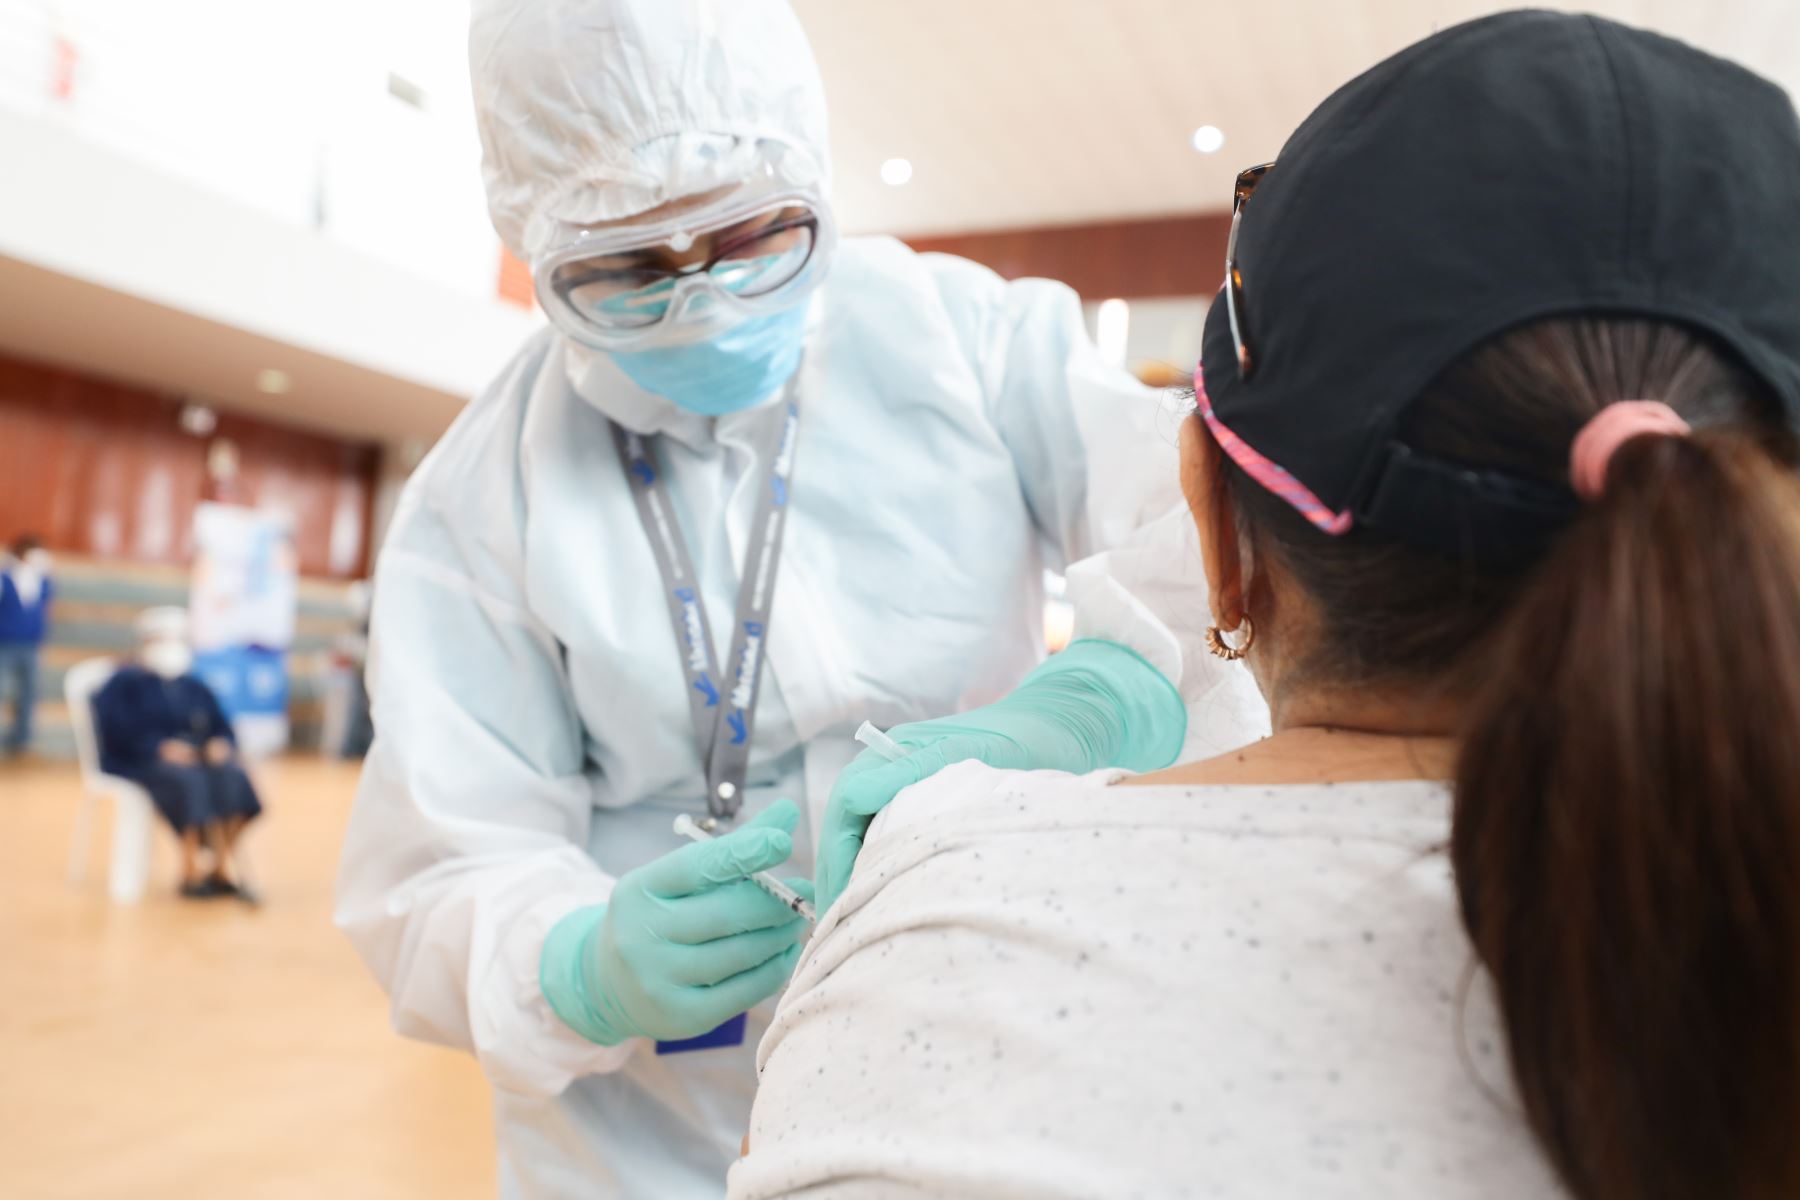 EsSalud realiza la campaña “ Essalud te cuida “ que ofrece servicios de  descarte de Covid y entrega de tratamiento, además de  vacunaciones contra la influenza y neumococo.Hasta el momento  han  vacunado  81,412 pacientes contra la Influenza y 98,041 contra el neumococo.
Foto: Essalud